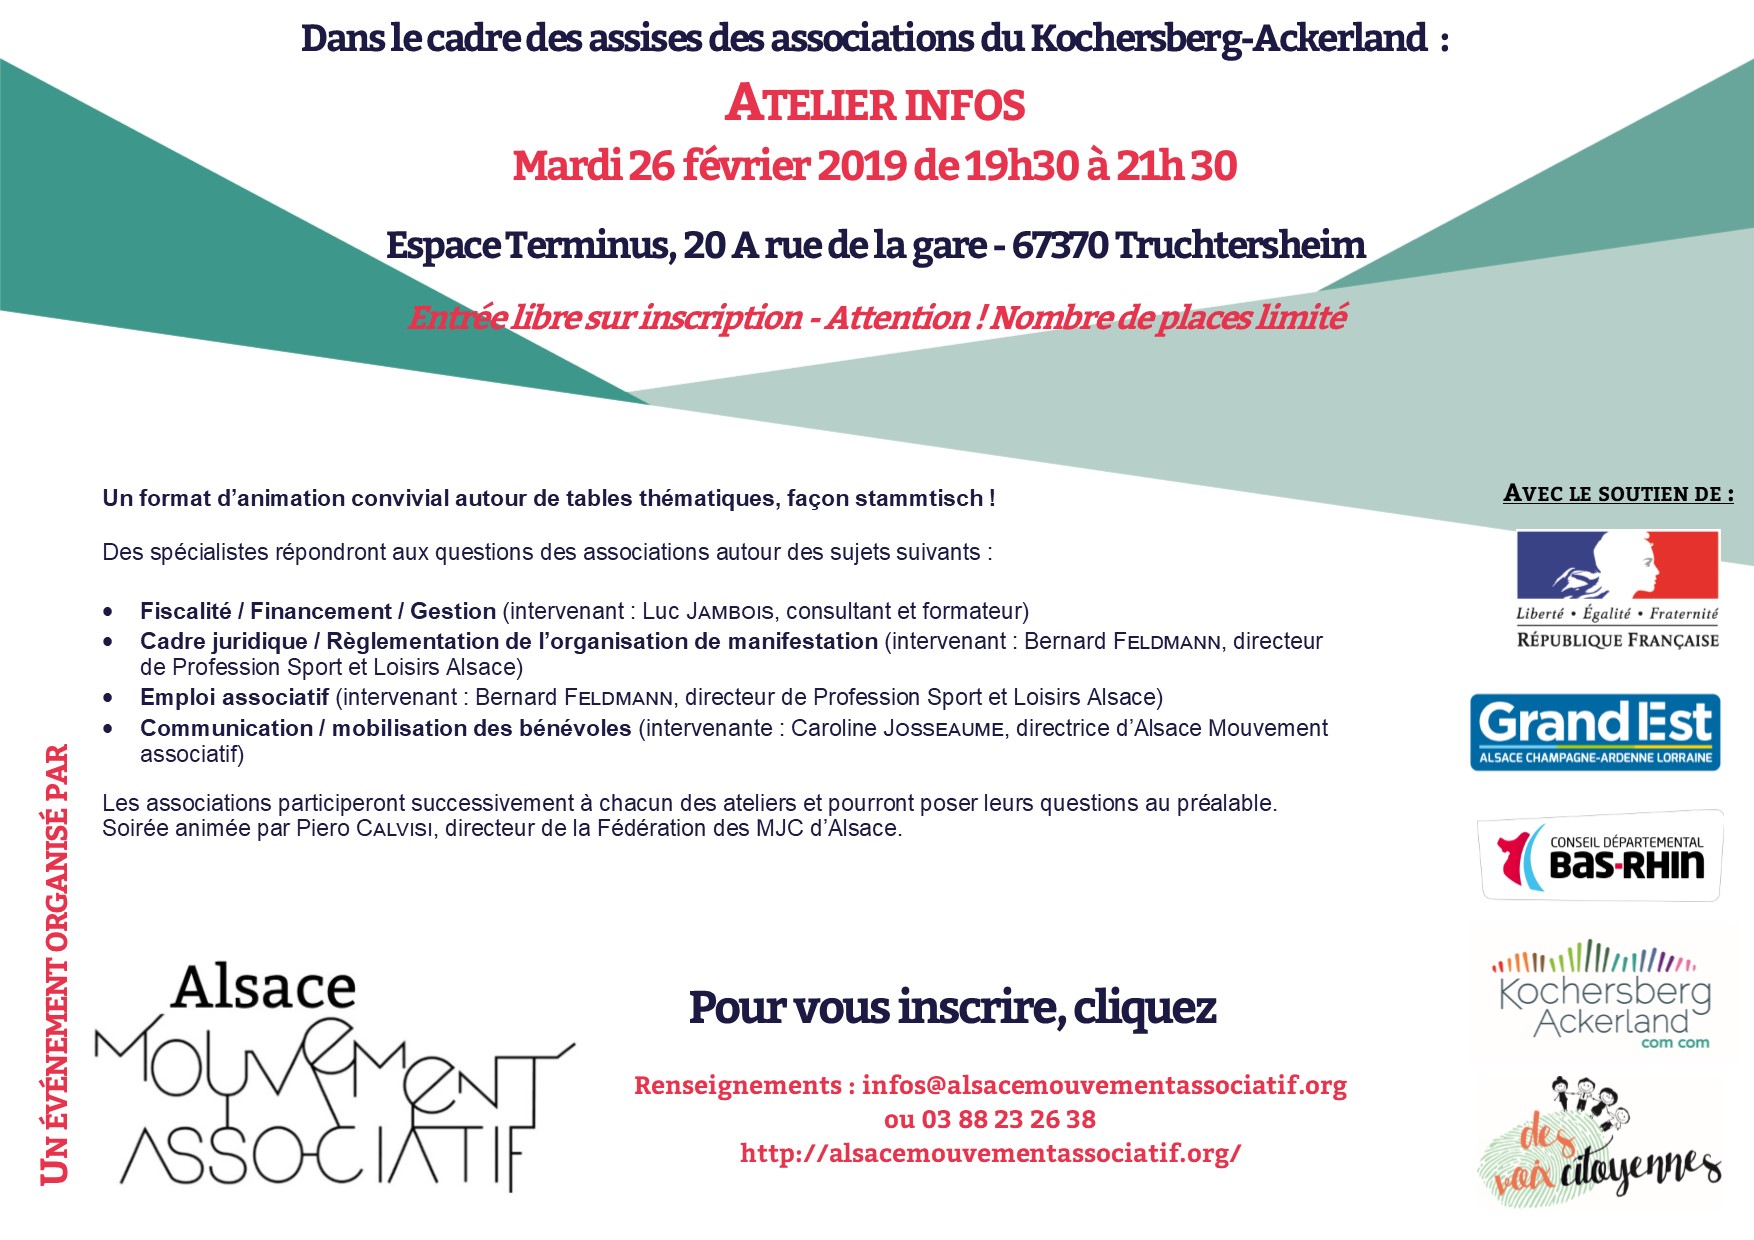 Atelier-infos - Alsace Mouvement associatif